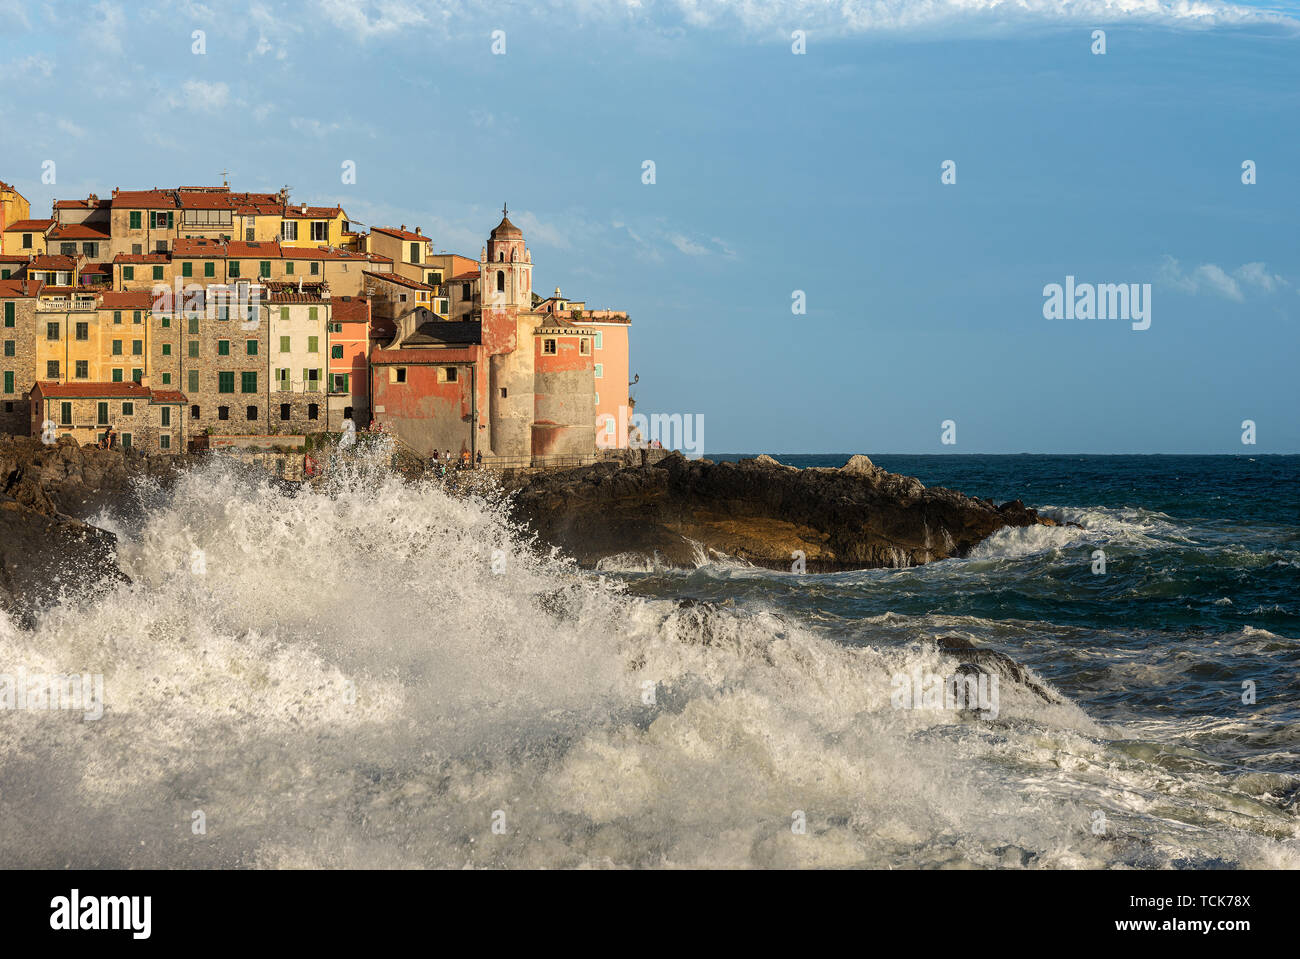 Grandi onde nel mare Mediterraneo. Il borgo antico di Tellaro durante una tempesta di mare. La Spezia, Liguria, Italia, Europa Foto Stock